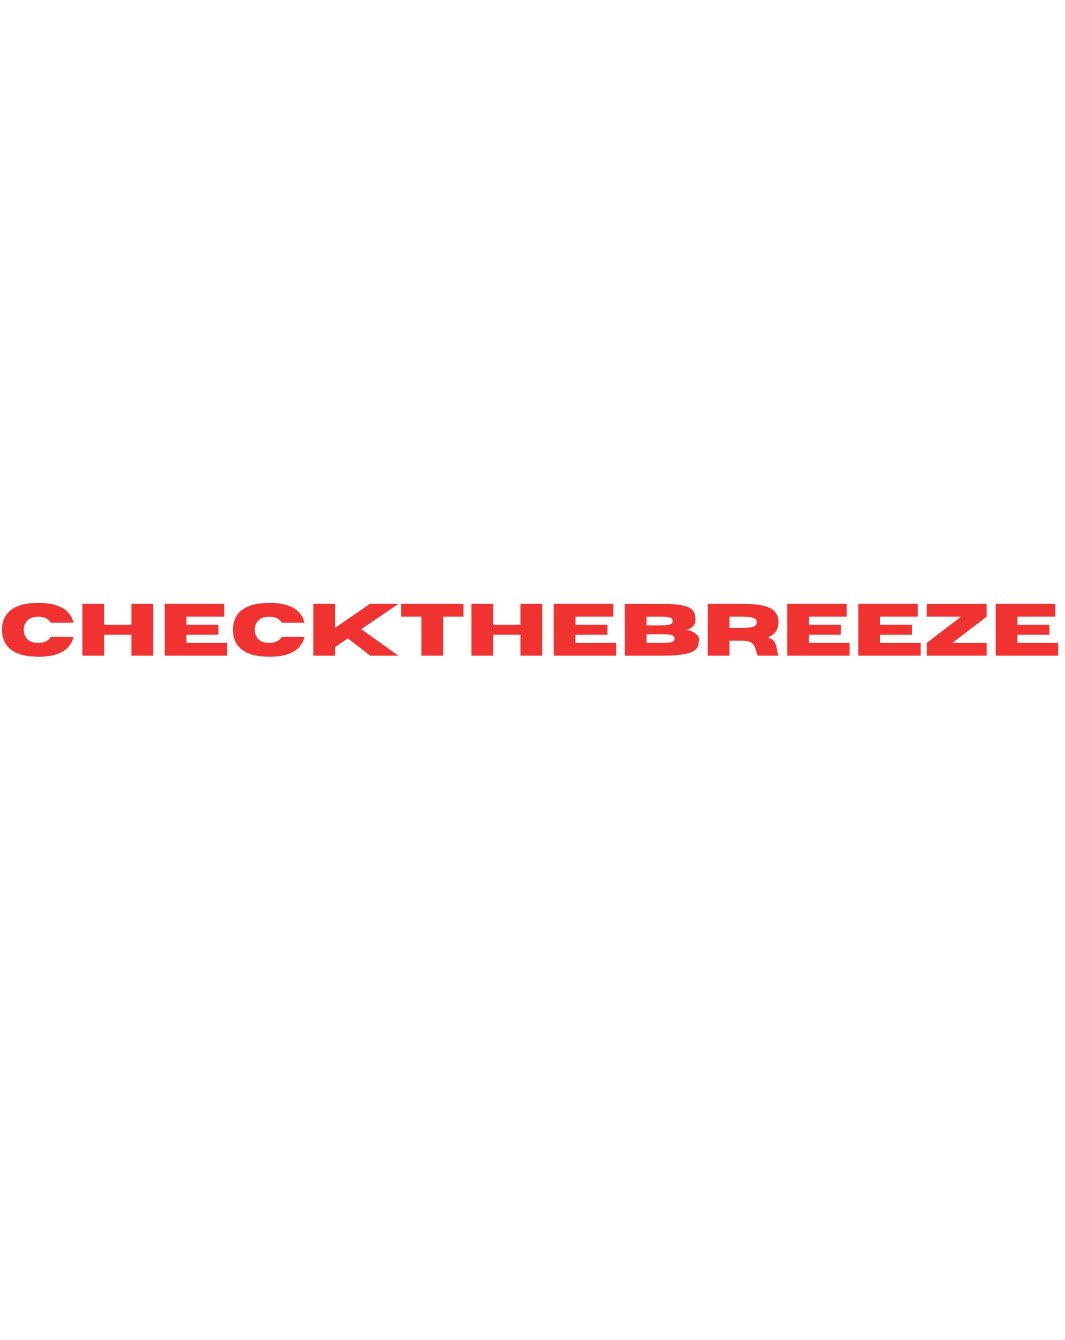 checkthebreeze.com